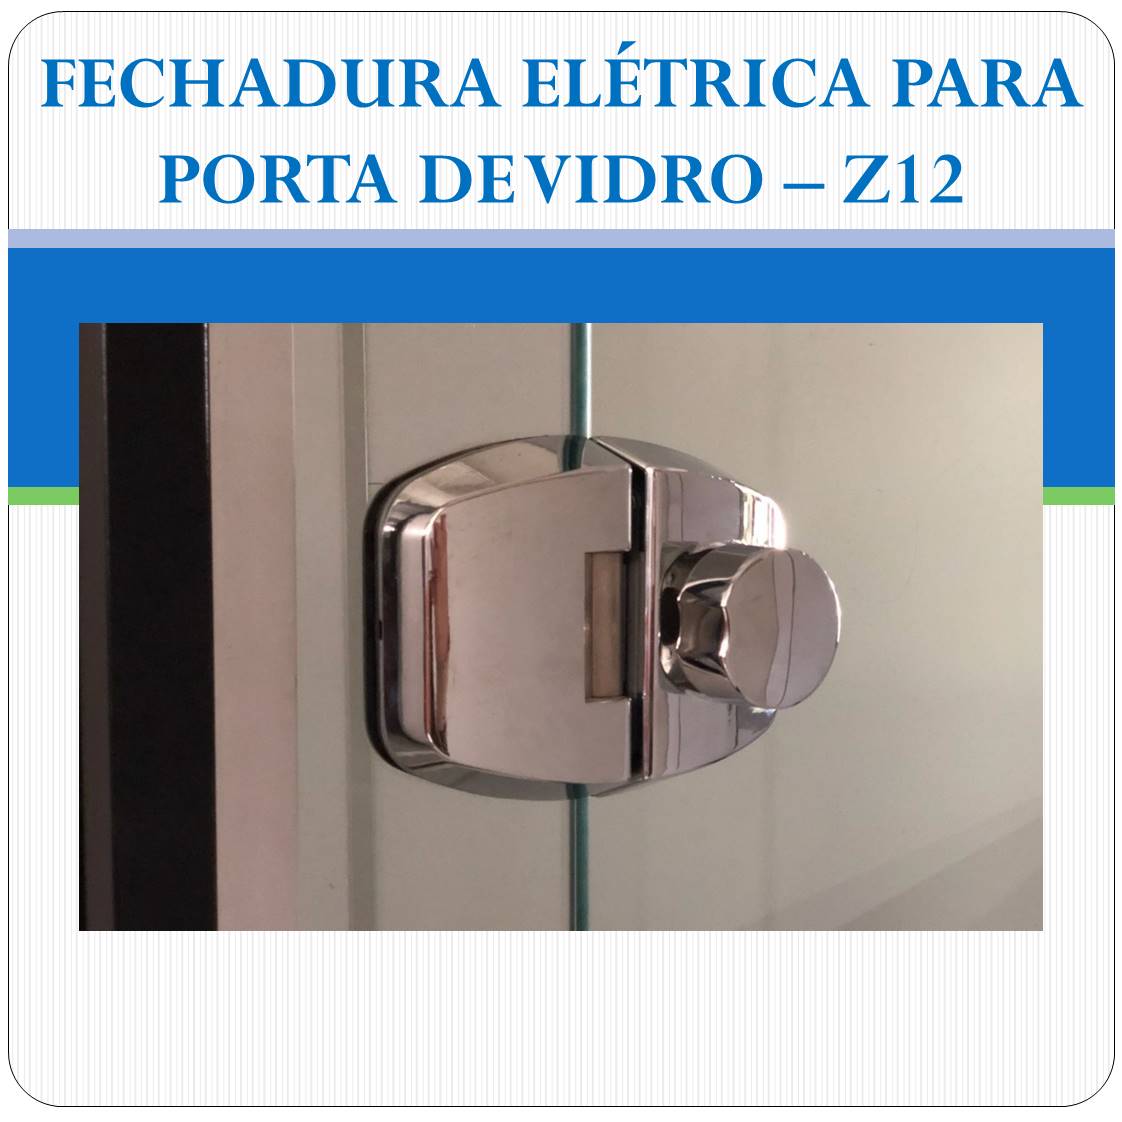 Fechadura Eletrica Porta de Vidro - Z-12E